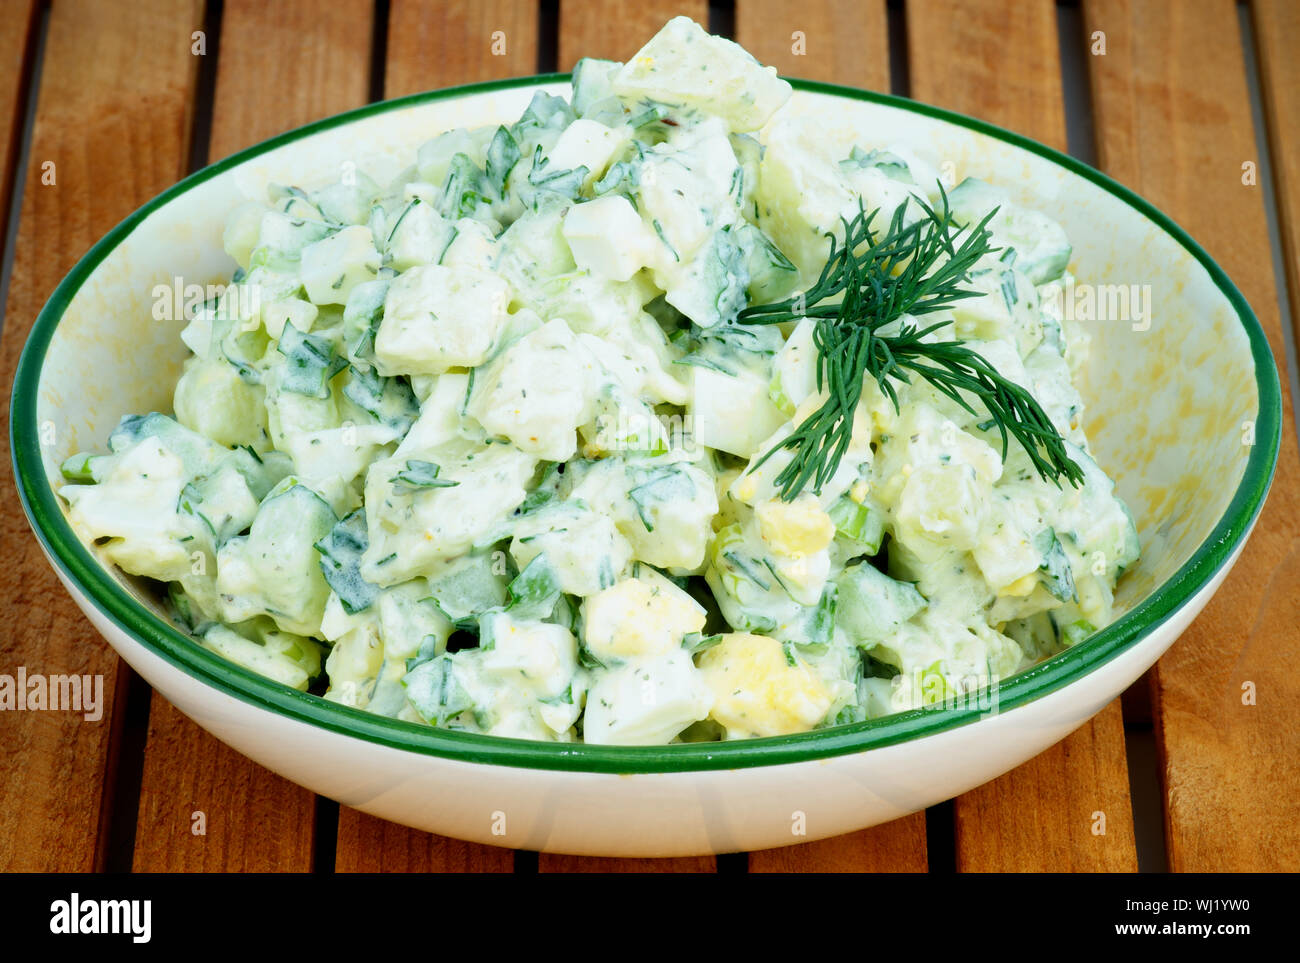 Köstliche Frisch zubereitete Cremige Kartoffel Salat garniert mit Dill in Beige Schüssel closeup auf Holzbrett Hintergrund Stockfoto